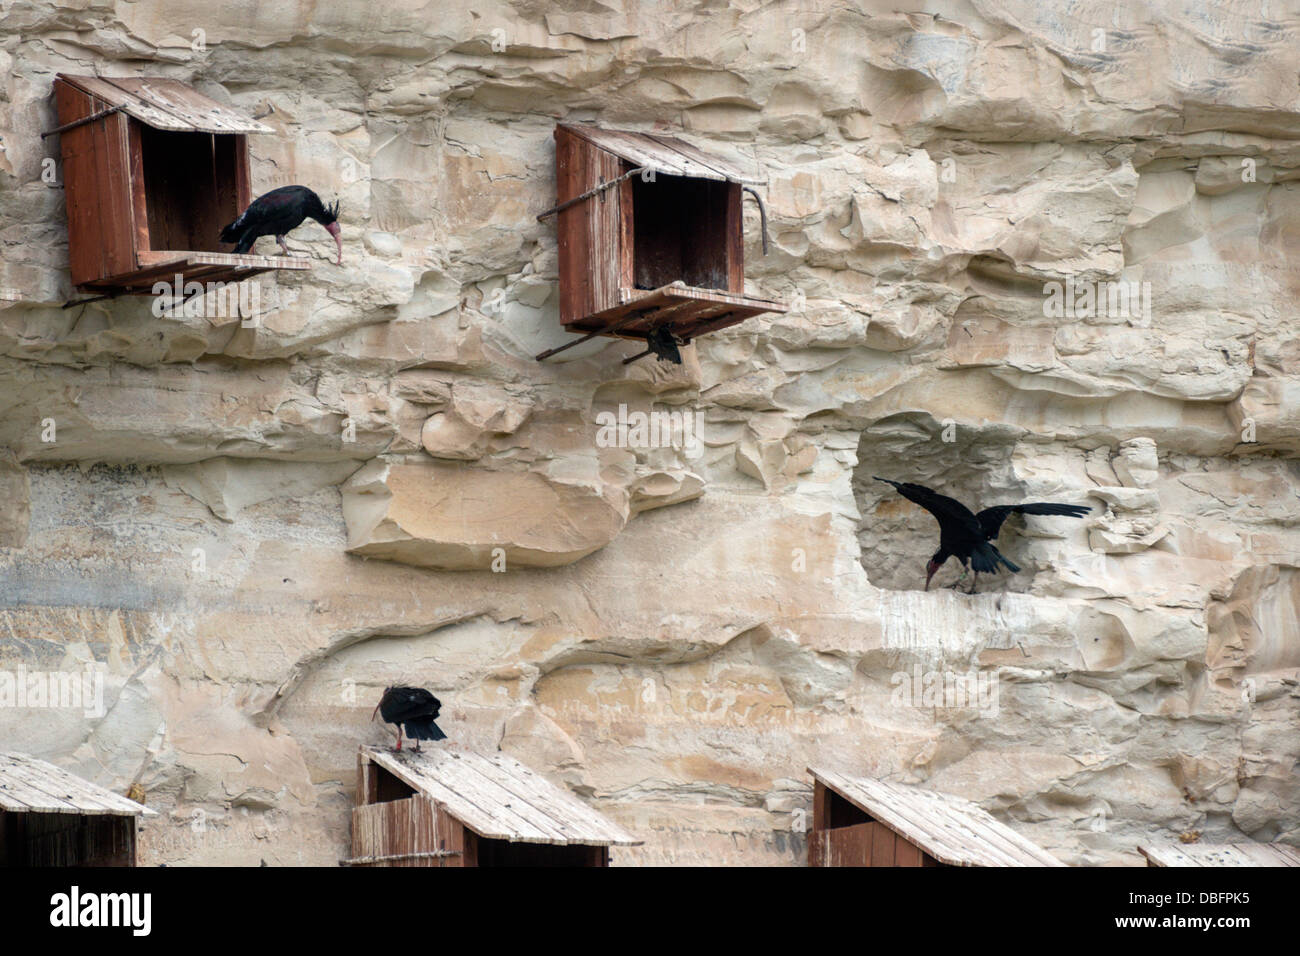 En peligro de extinción ibis calva, Geronticus eremita, la rehabilitación y el centro de cría en cautividad de Gaziantep, Turquía Foto de stock